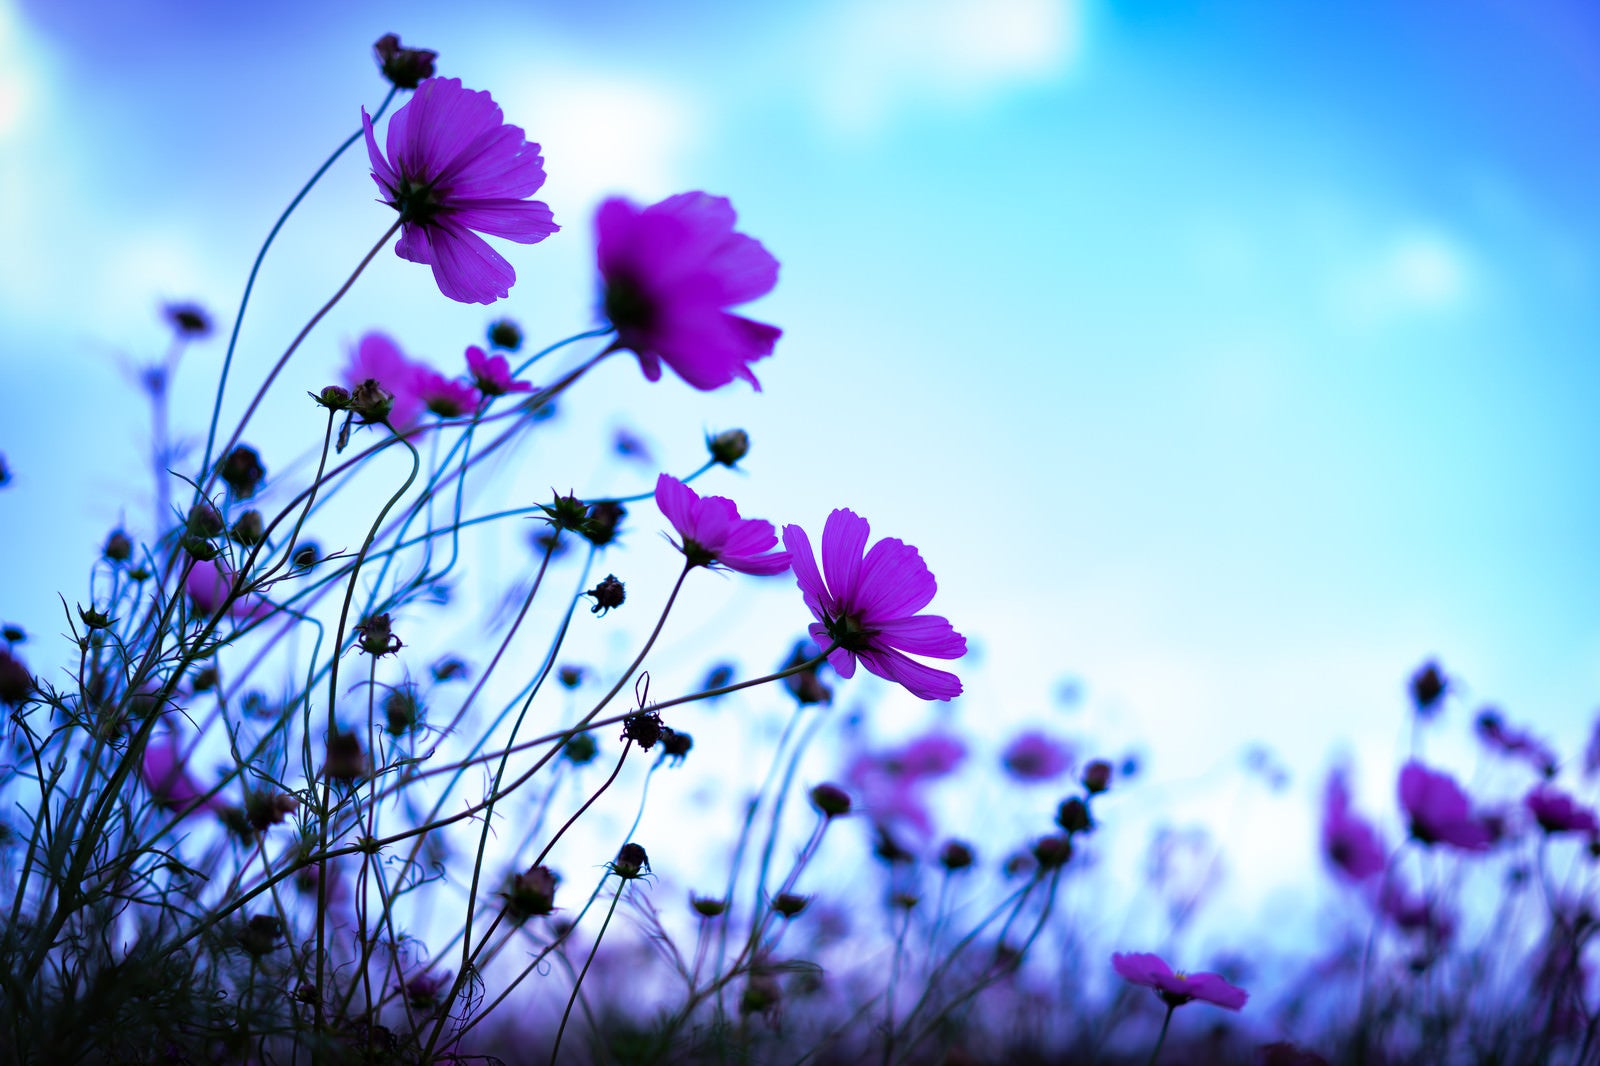 「青空に向かって咲くコスモス」の写真